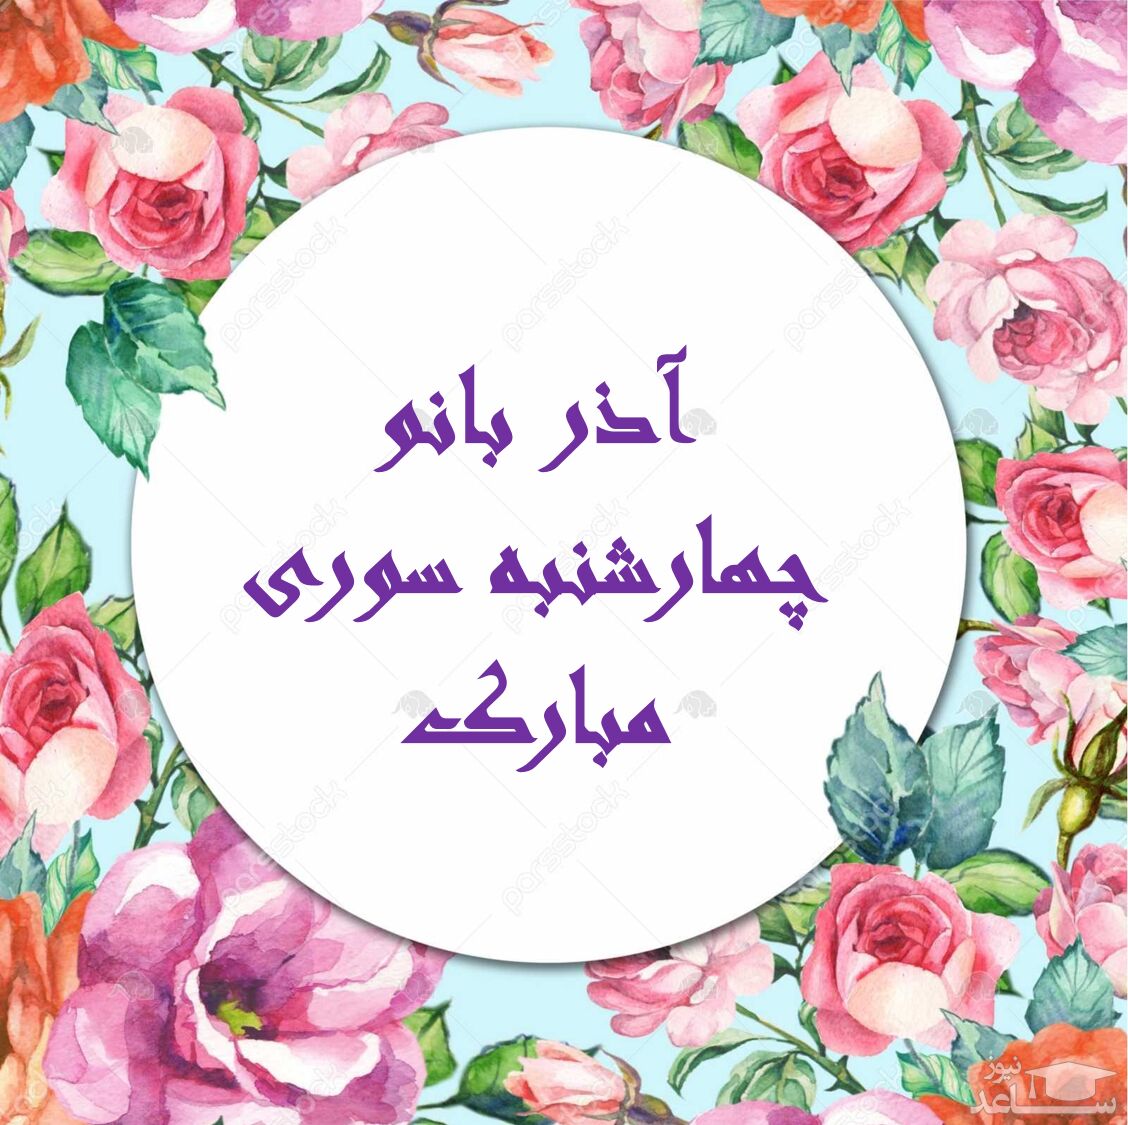 دل انگیز ترین پیام های تبریک چهارشنبه سوری برای آذر بانو